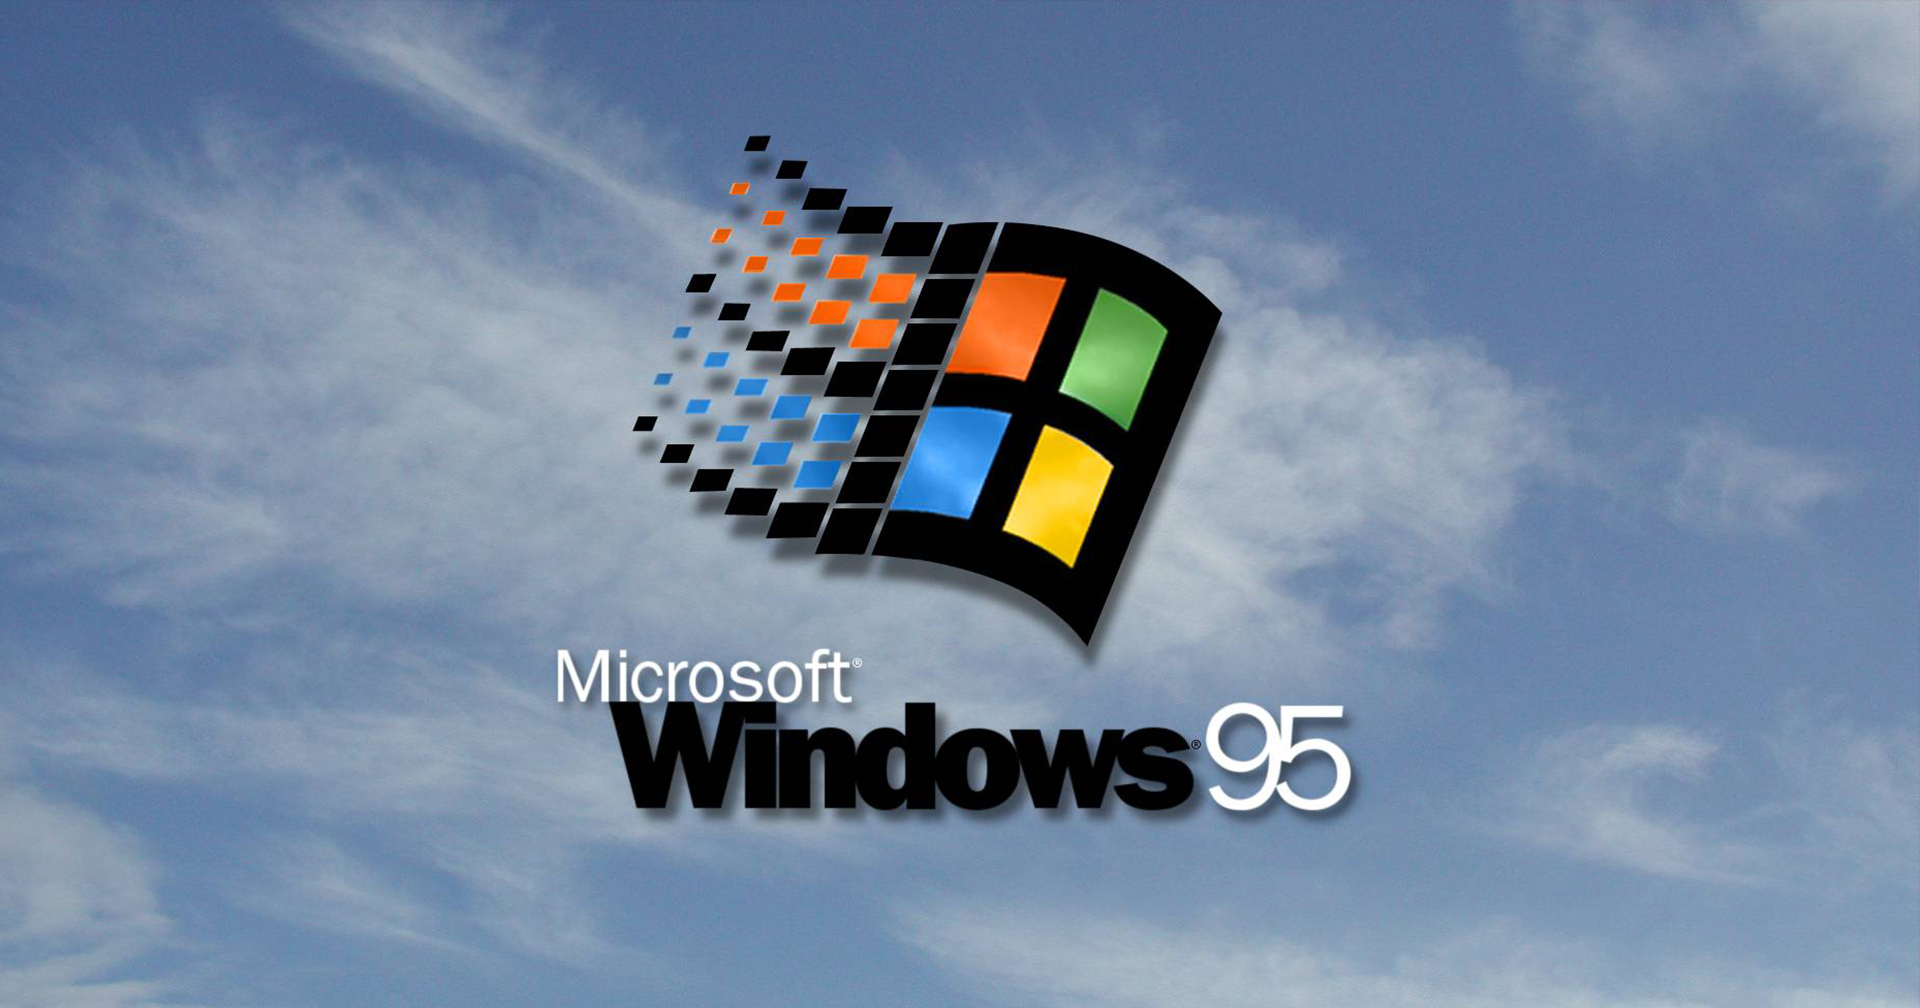 เสียง ‘Windows 95’ ถูกสร้างจากเครื่อง Mac เพราะโปรดิวเซอร์วง U2 ไม่ชอบใช้ PC